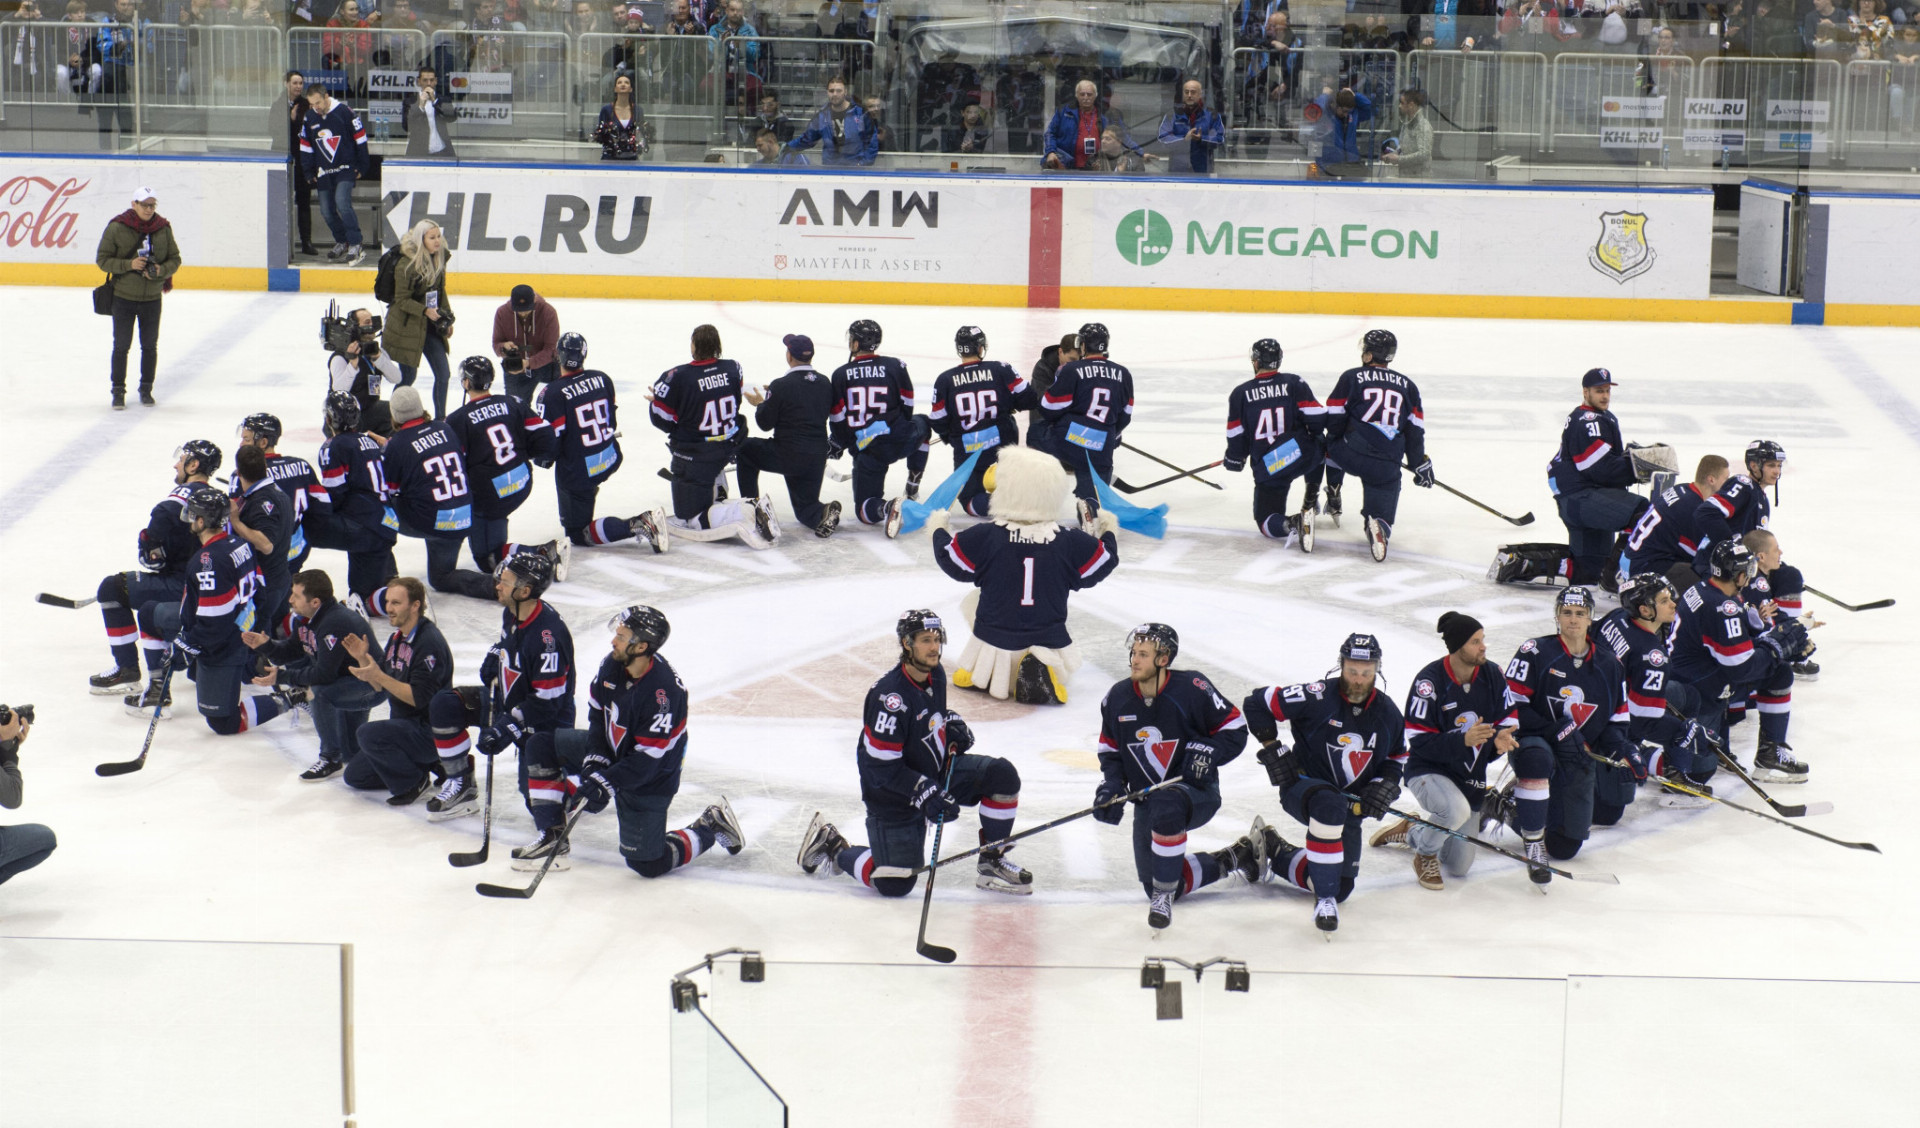 Hokejisti Slovana sa v poslednom zápase sezóny rozlúčili s piatou sezónou v KHL víťazstvom 7:5 nad Medveščakom Záhreb.